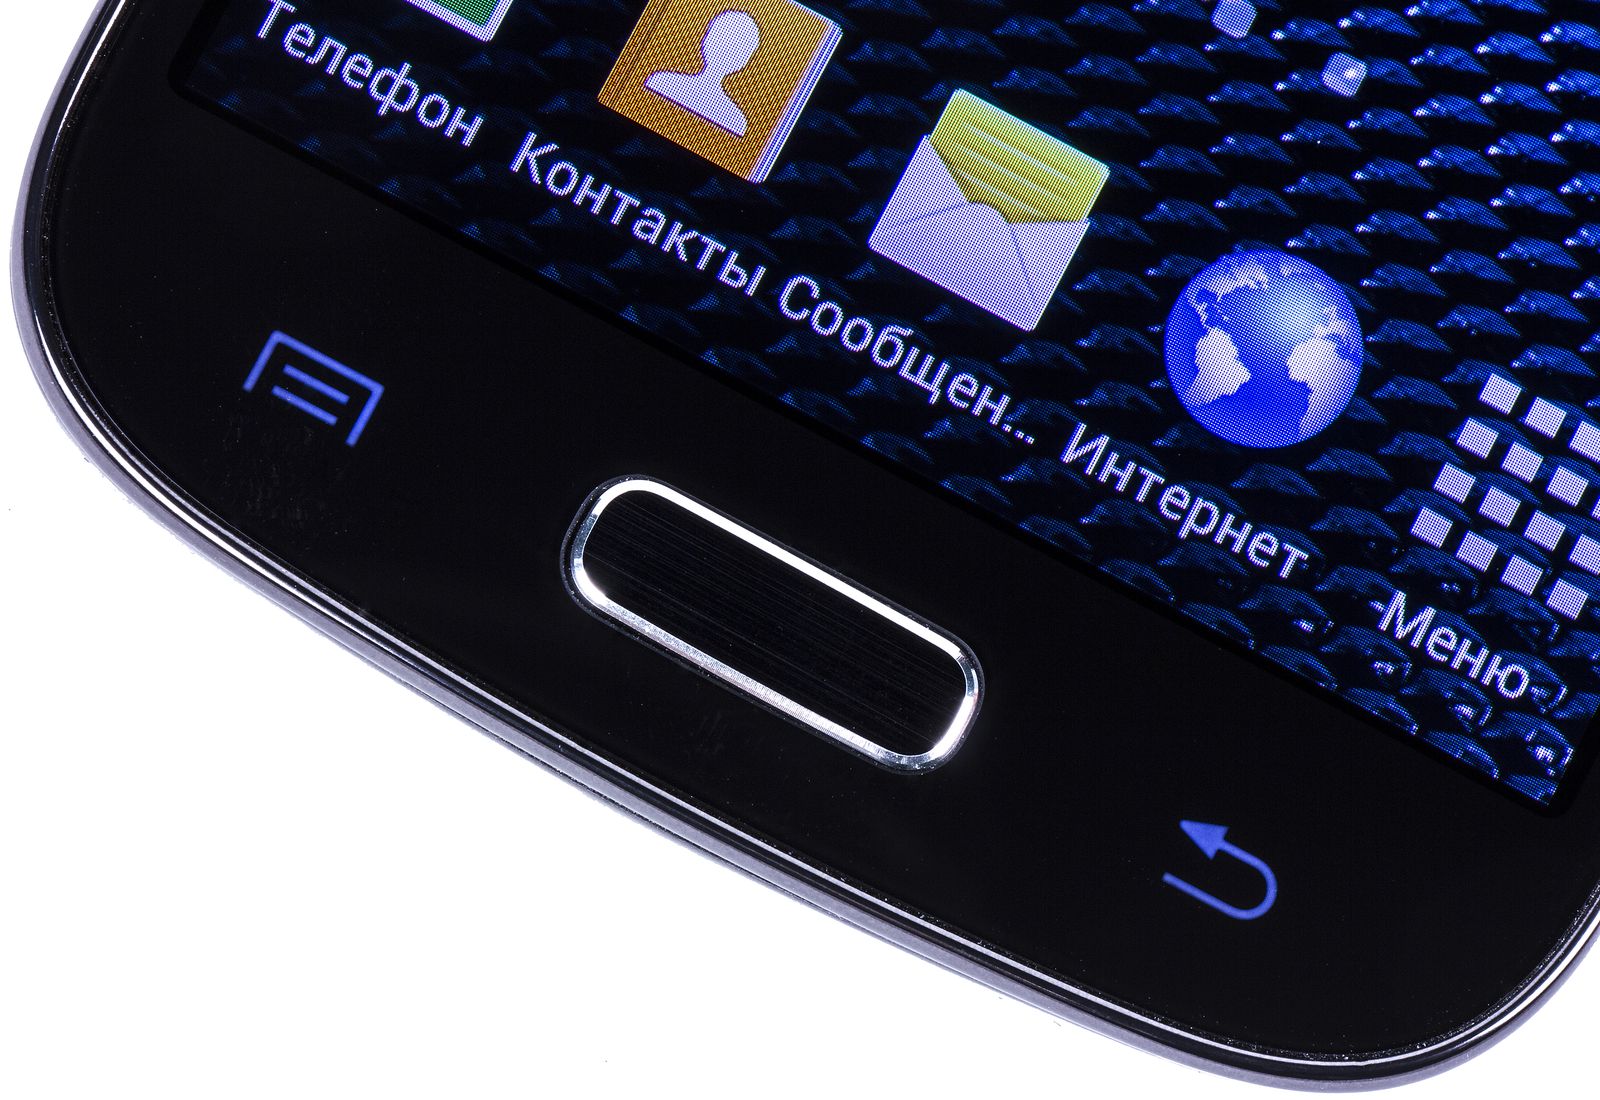 Звука телефоне самсунг галакси. Samsung s4 Mini Black Edition. Самсунг галакси с кнопкой. Самсунг гелакси АС кнопкой. Самсунг с кнопкой 2008.